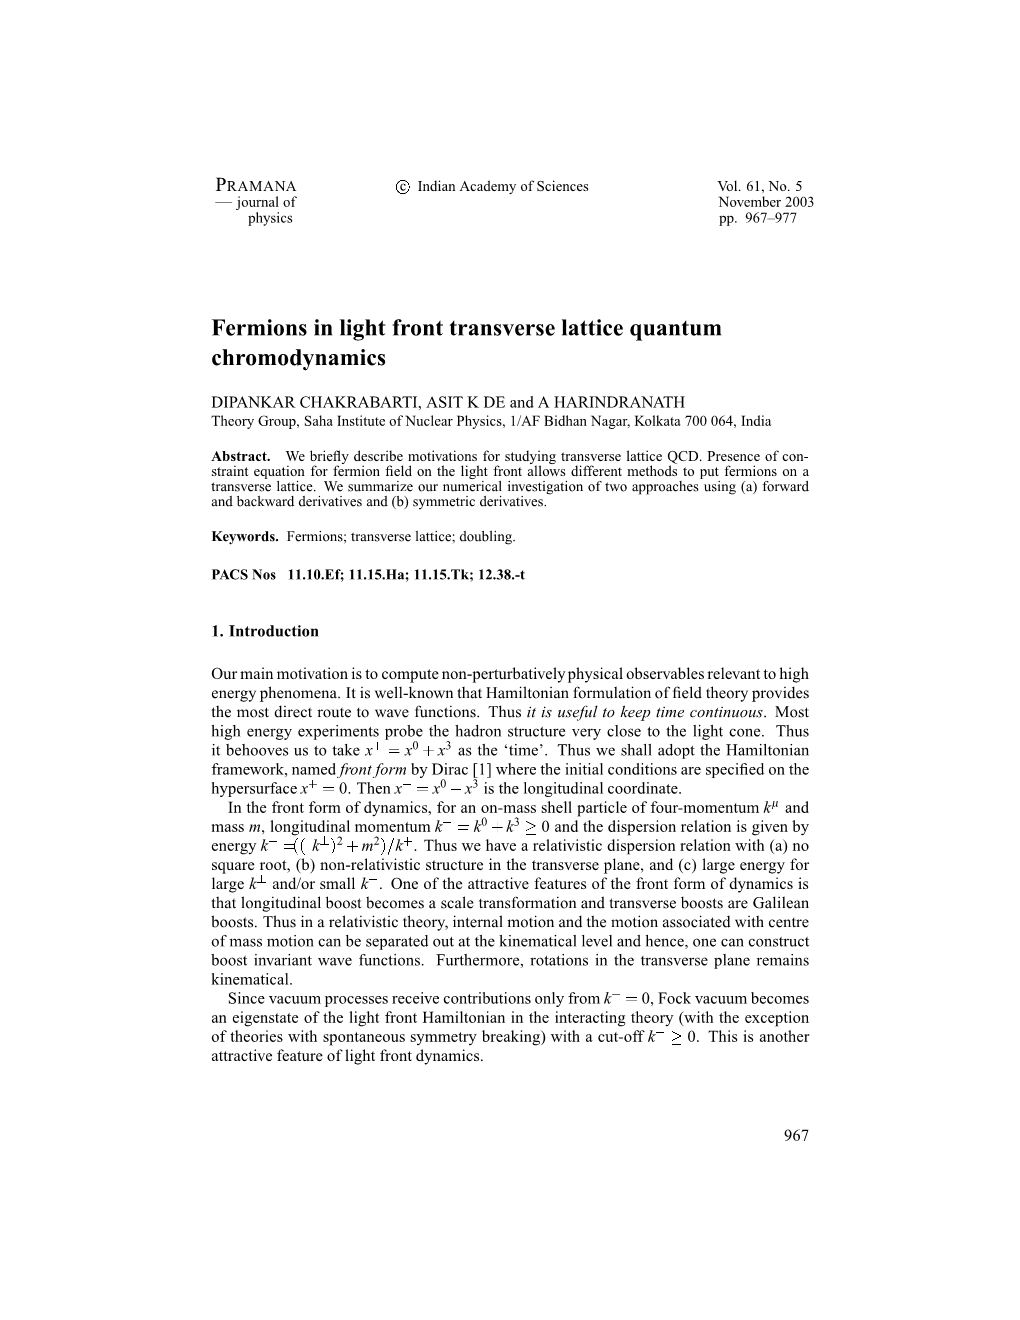 Fermions in Light Front Transverse Lattice Quantum Chromodynamics